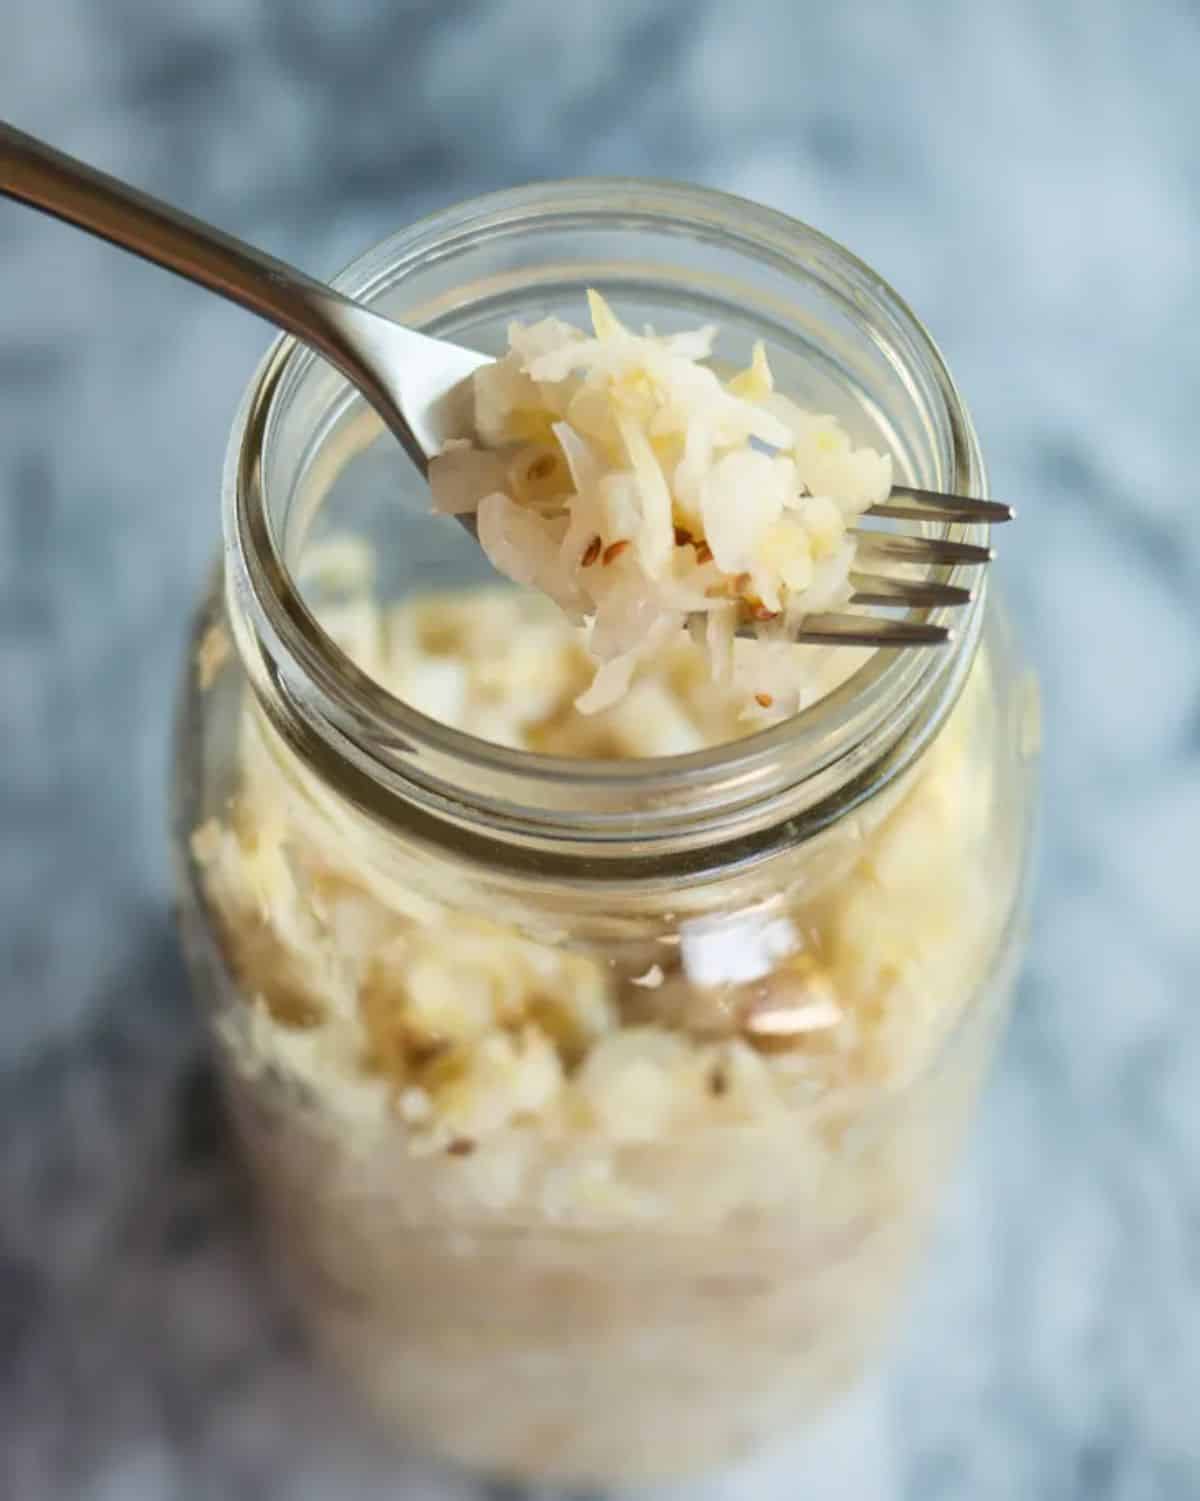 Homemade sauerkraut in a glass jar